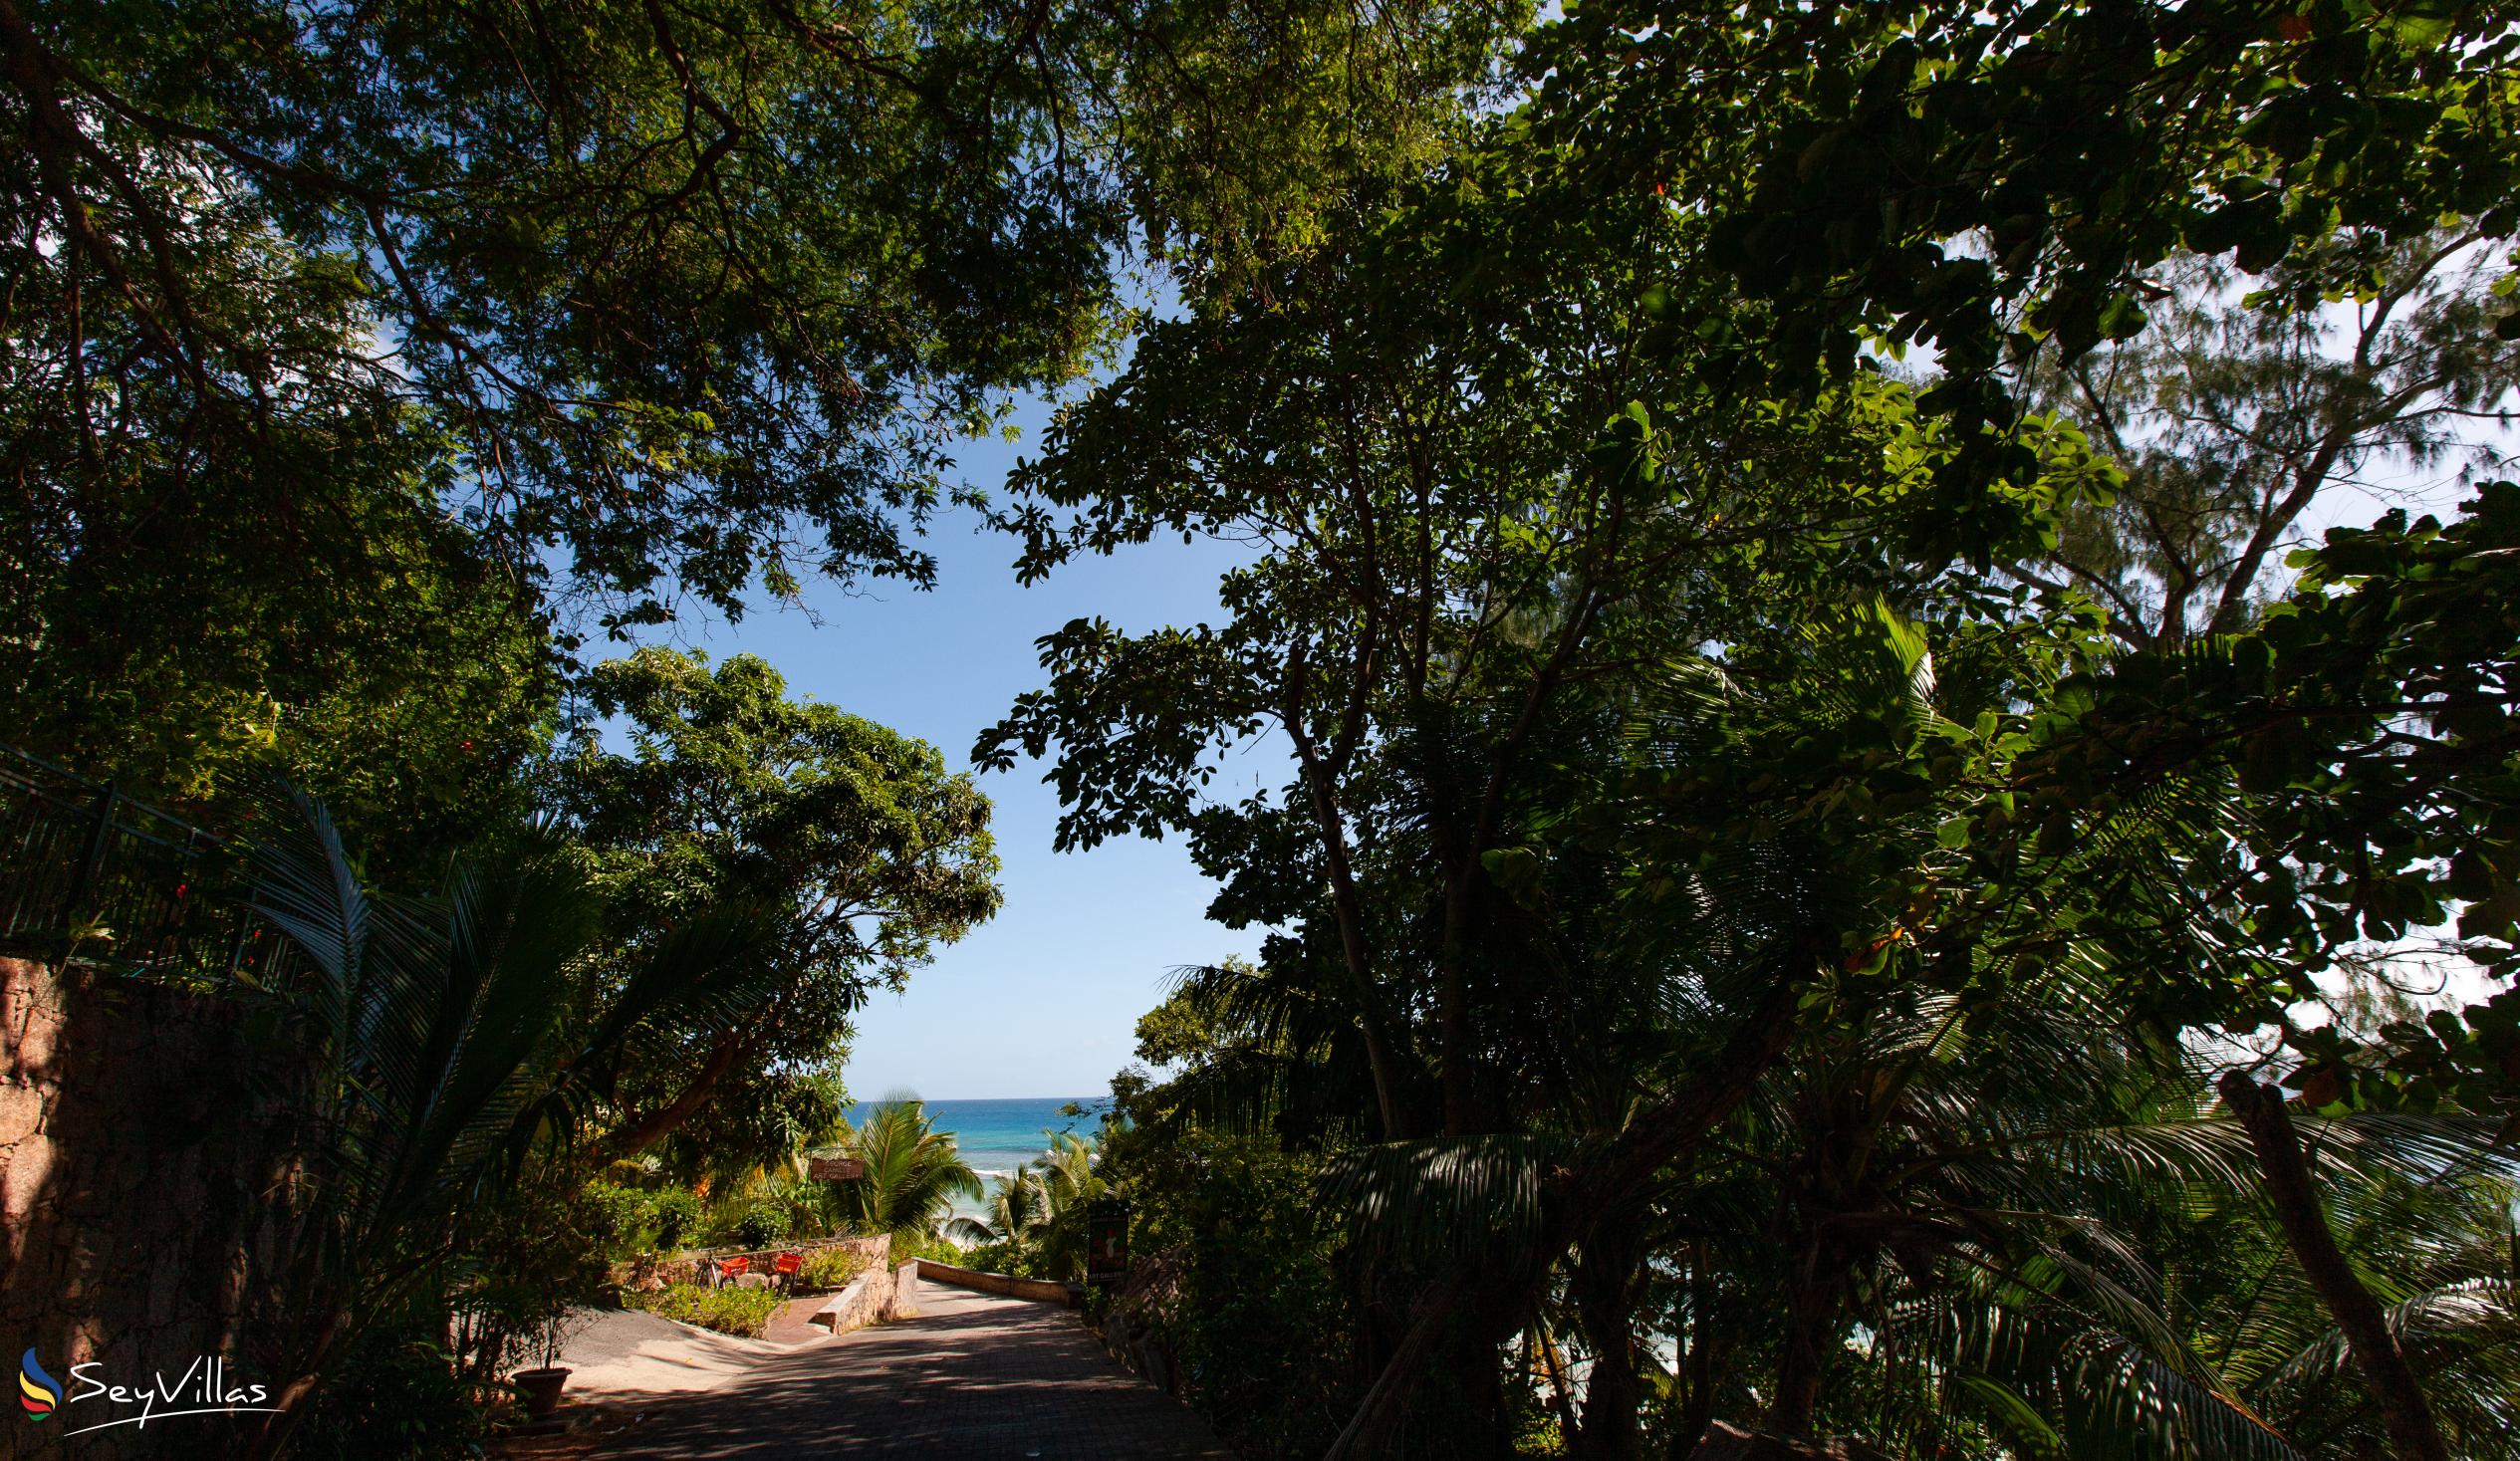 Photo 27: Lakaz An Bwa - Location - La Digue (Seychelles)